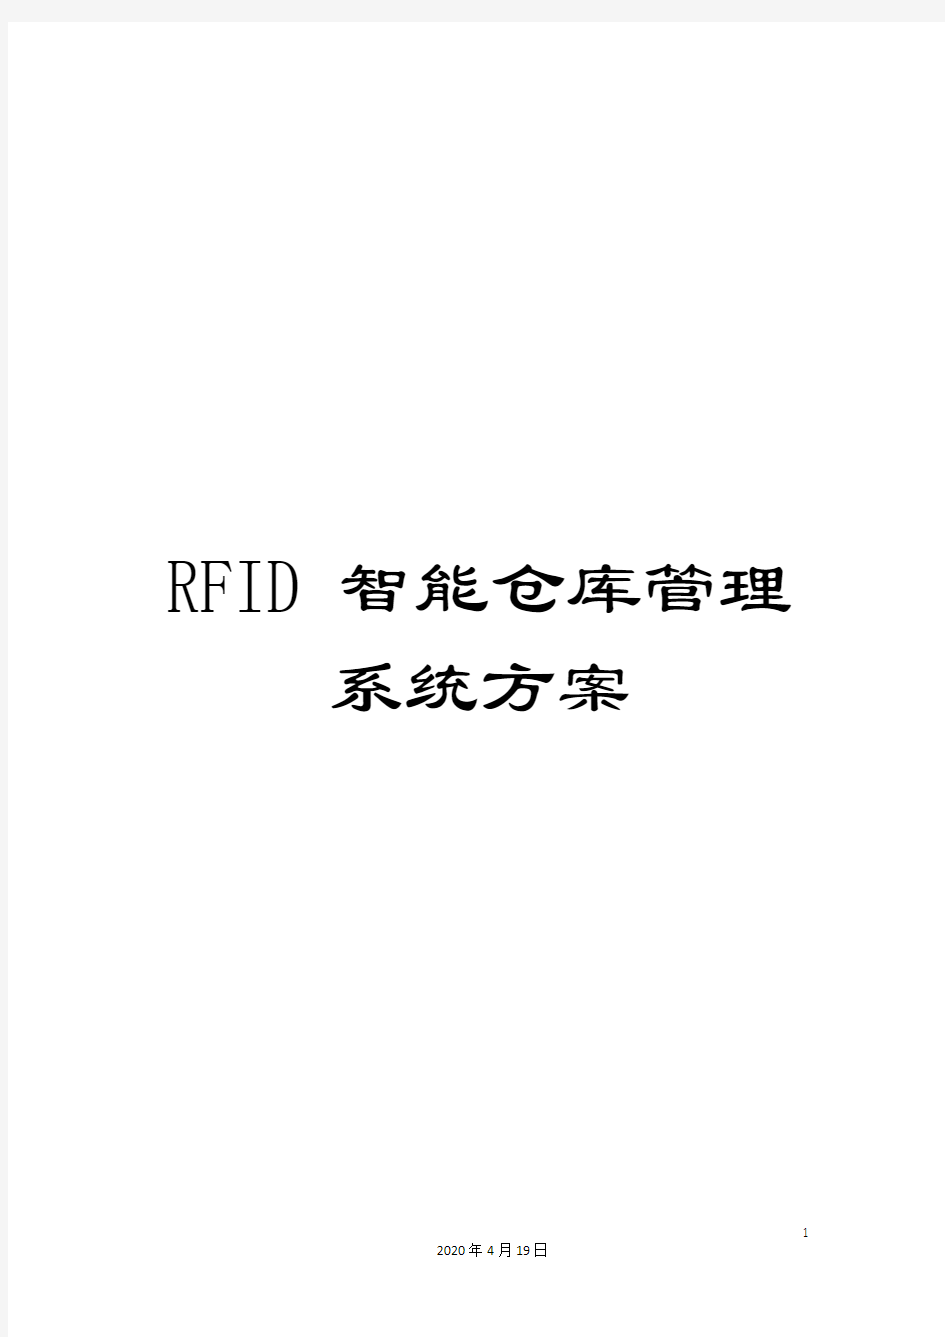 RFID智能仓库管理系统方案